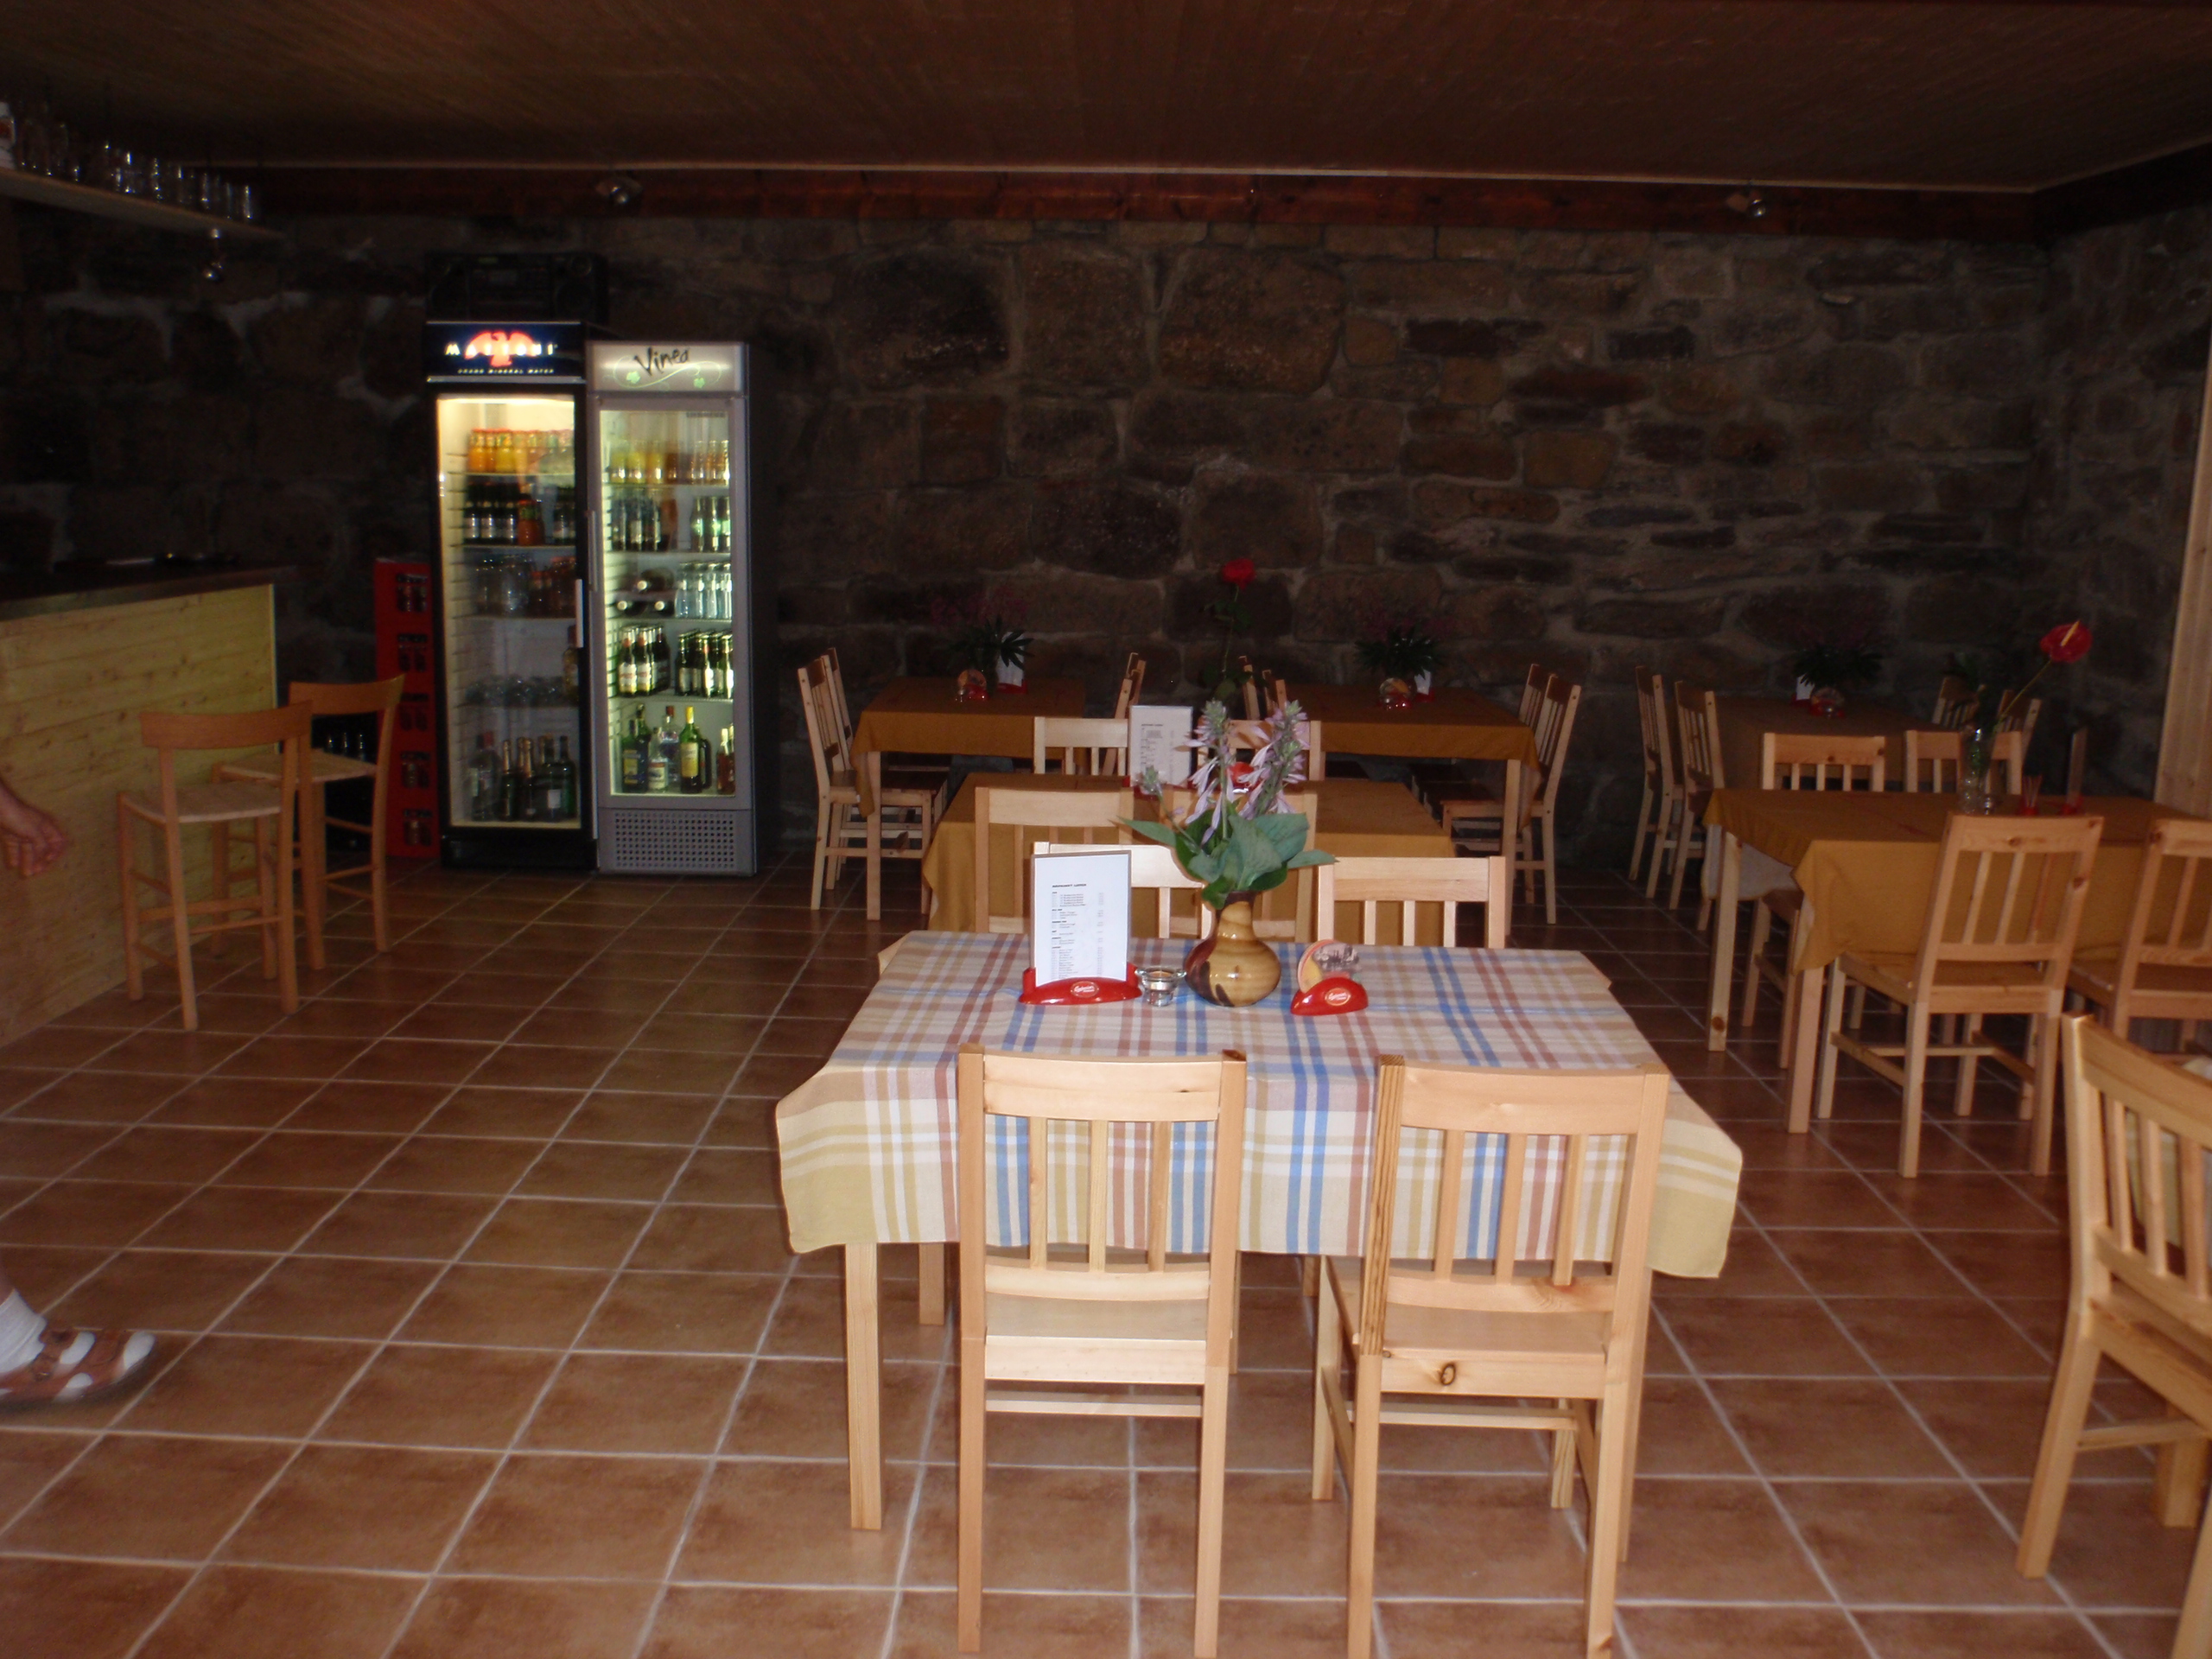 Penzion s restaurací Hruška - Orlické hory - Bartošovice v Orlických horách